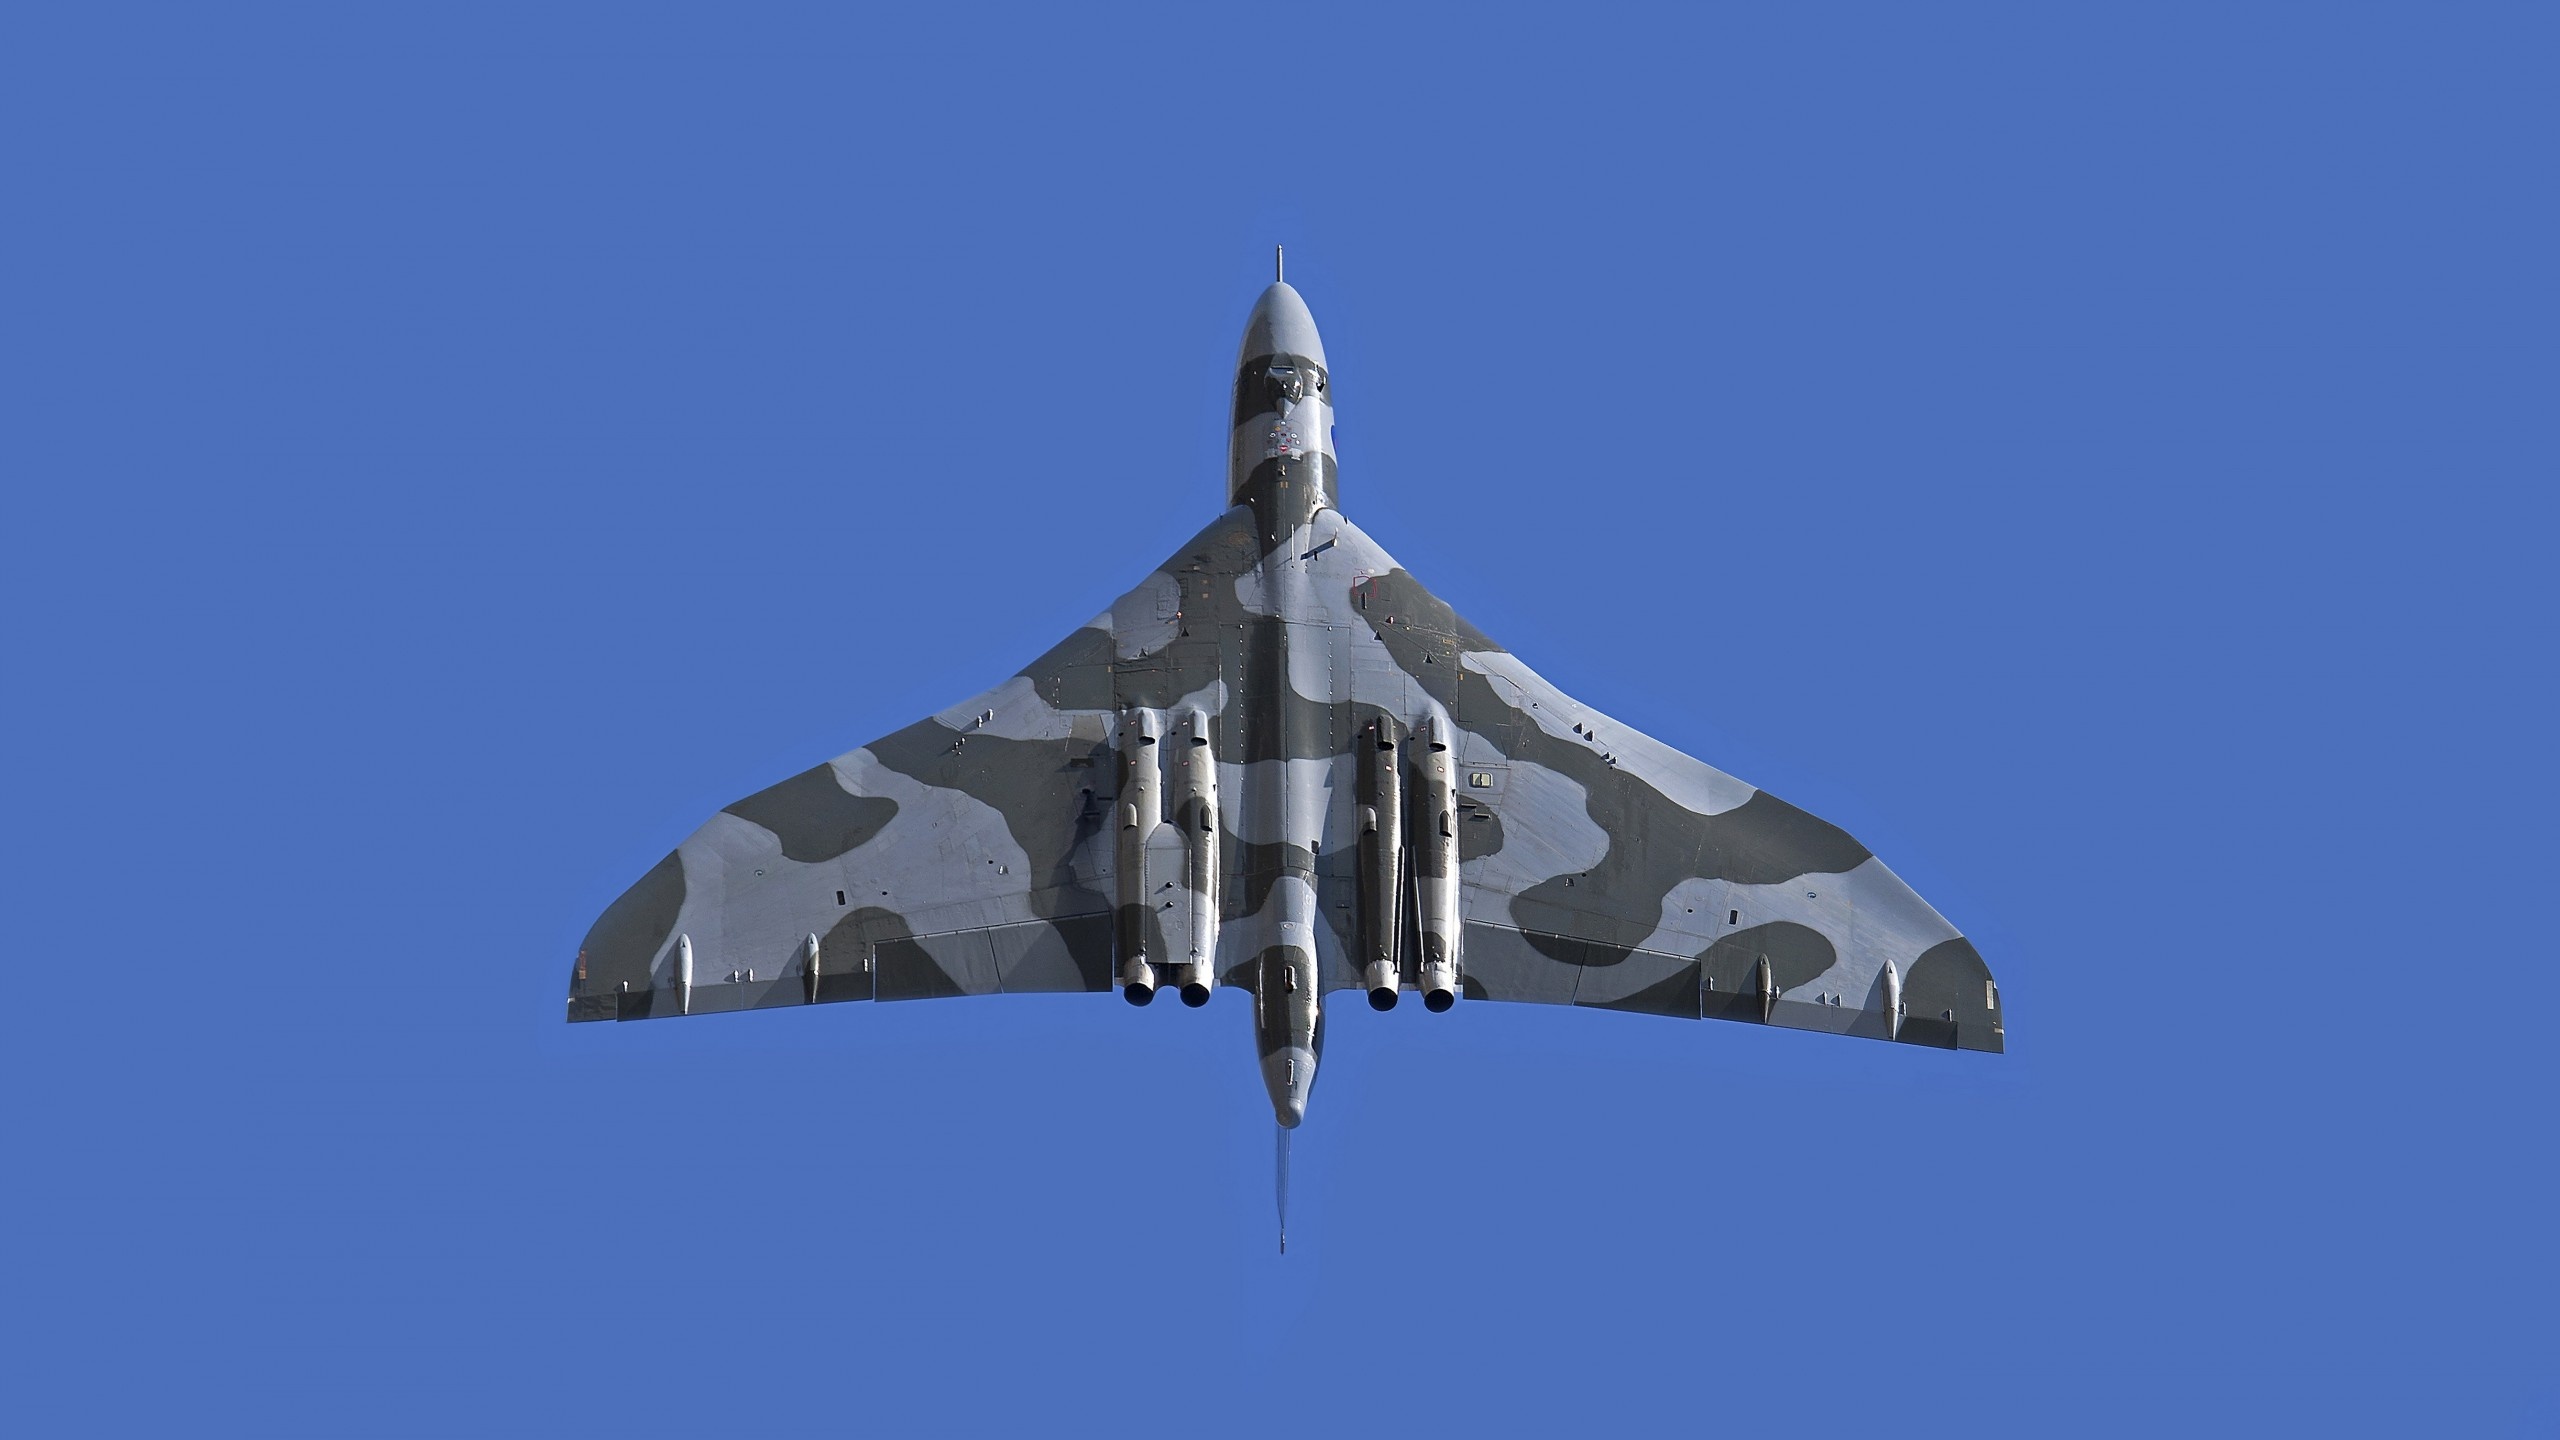 Avro Vulcan, Royal Air Force, 5K military wallpaper, Bomber, 2560x1440 HD Desktop